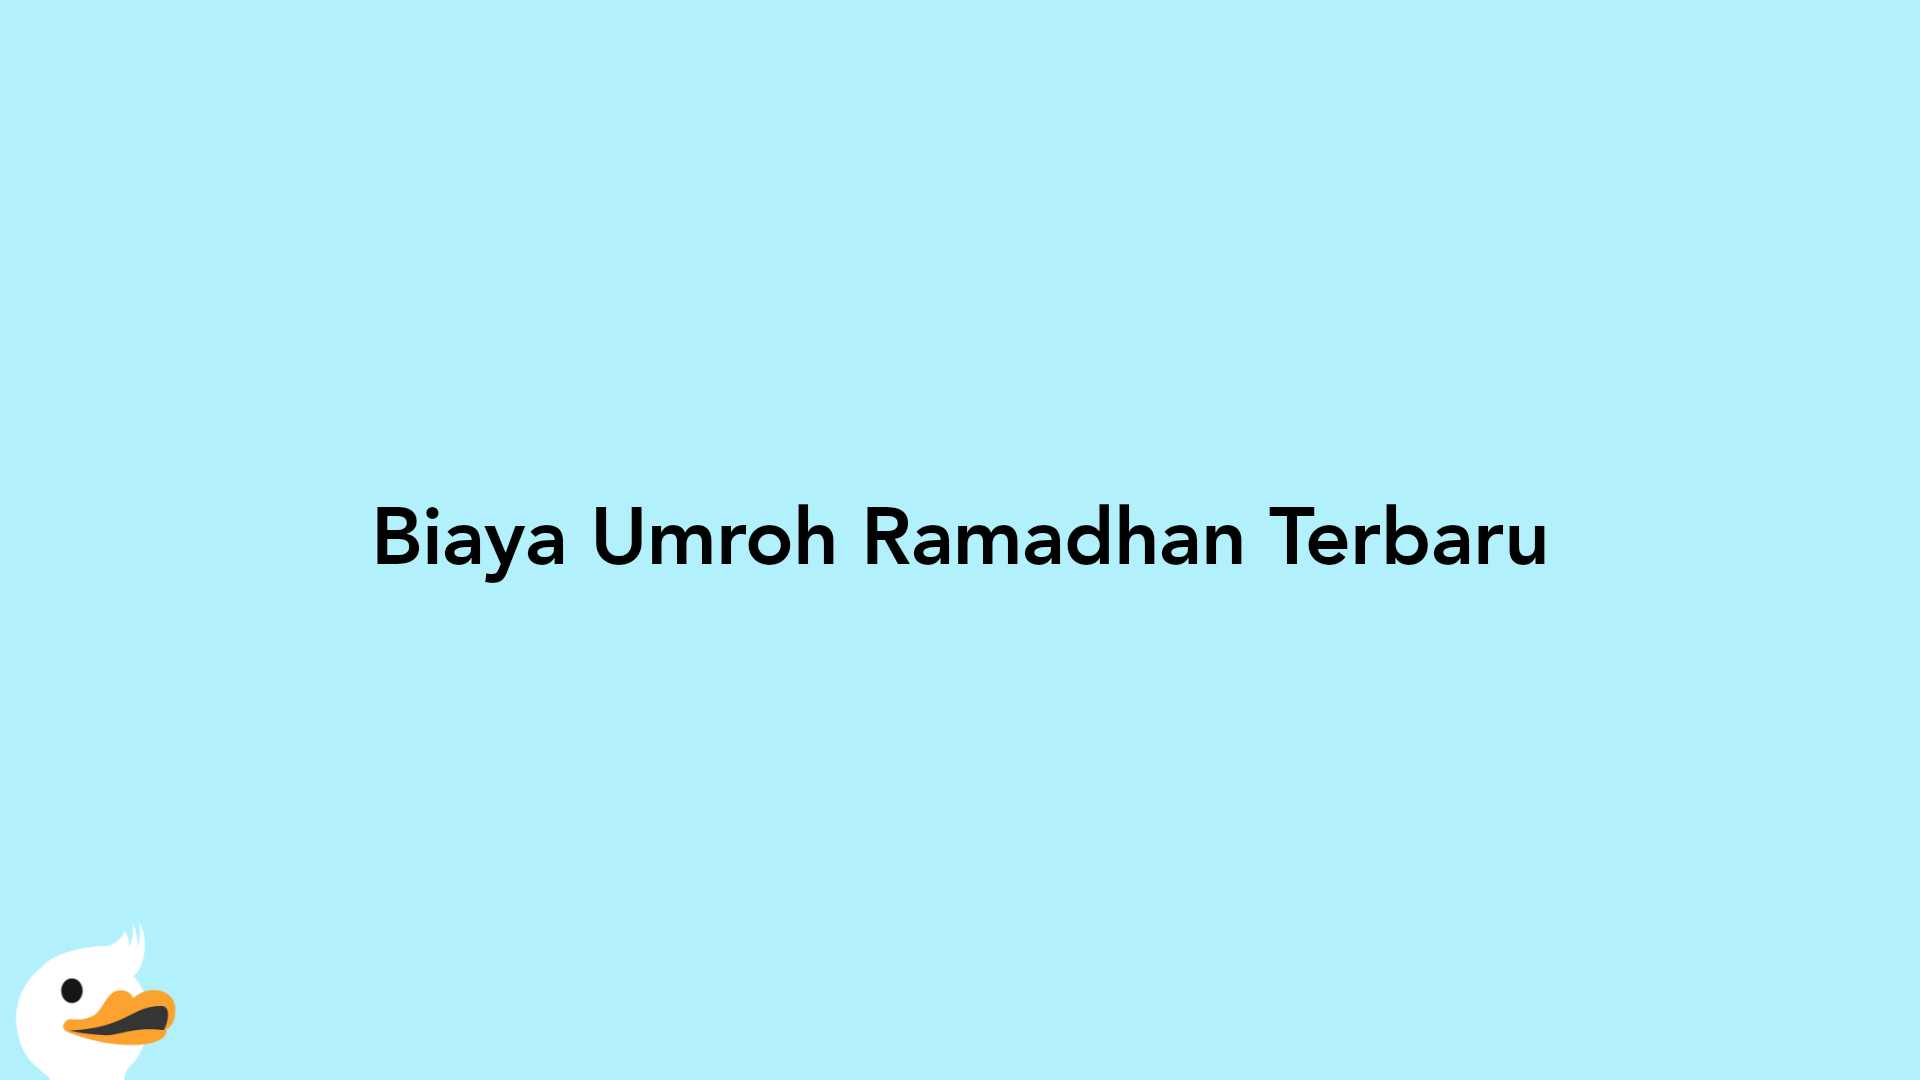 Biaya Umroh Ramadhan Terbaru